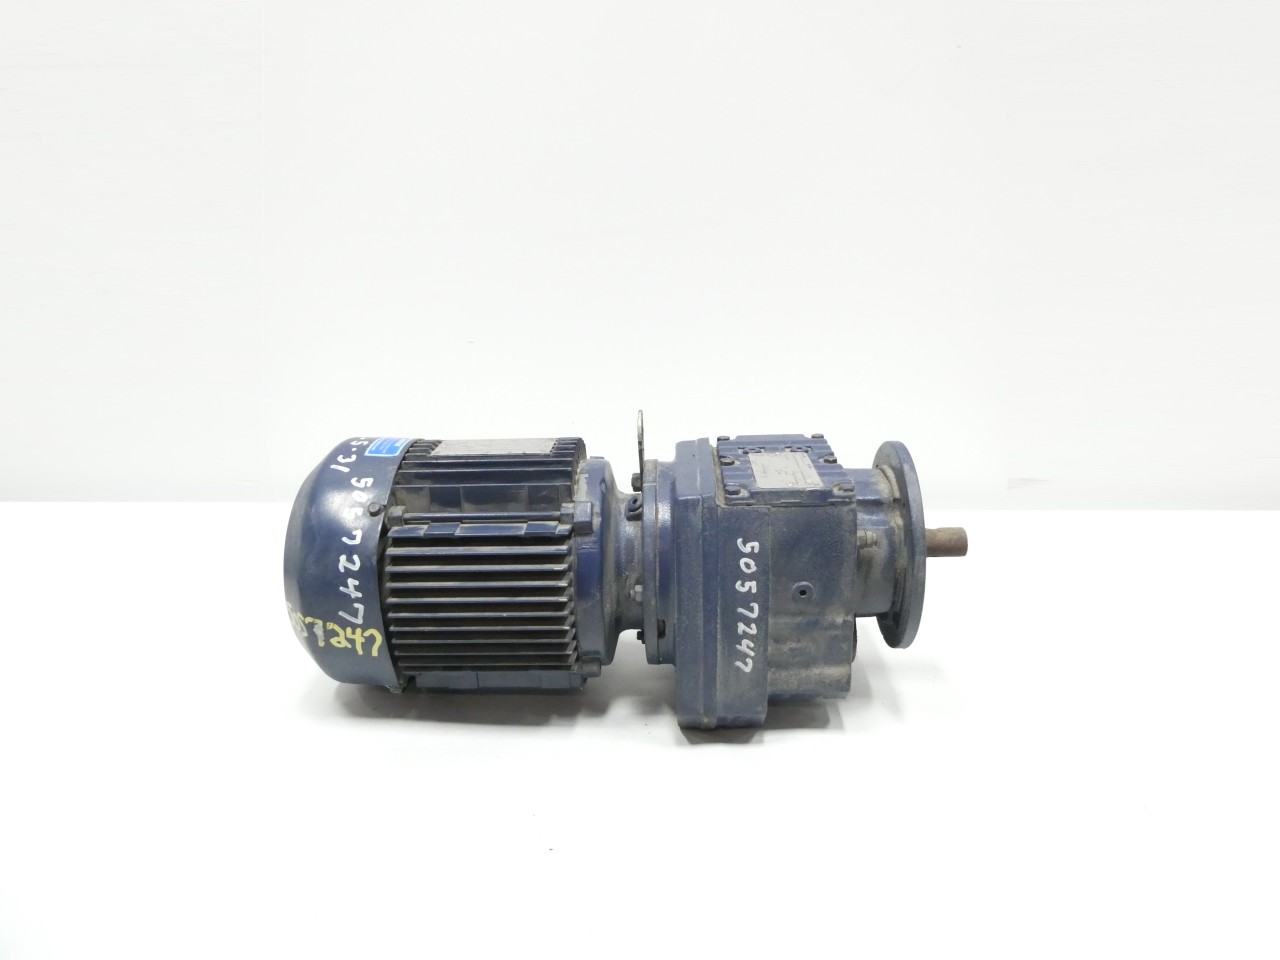 220V 40w 2.7-450rpm variable speed motor ac gear reducer motor